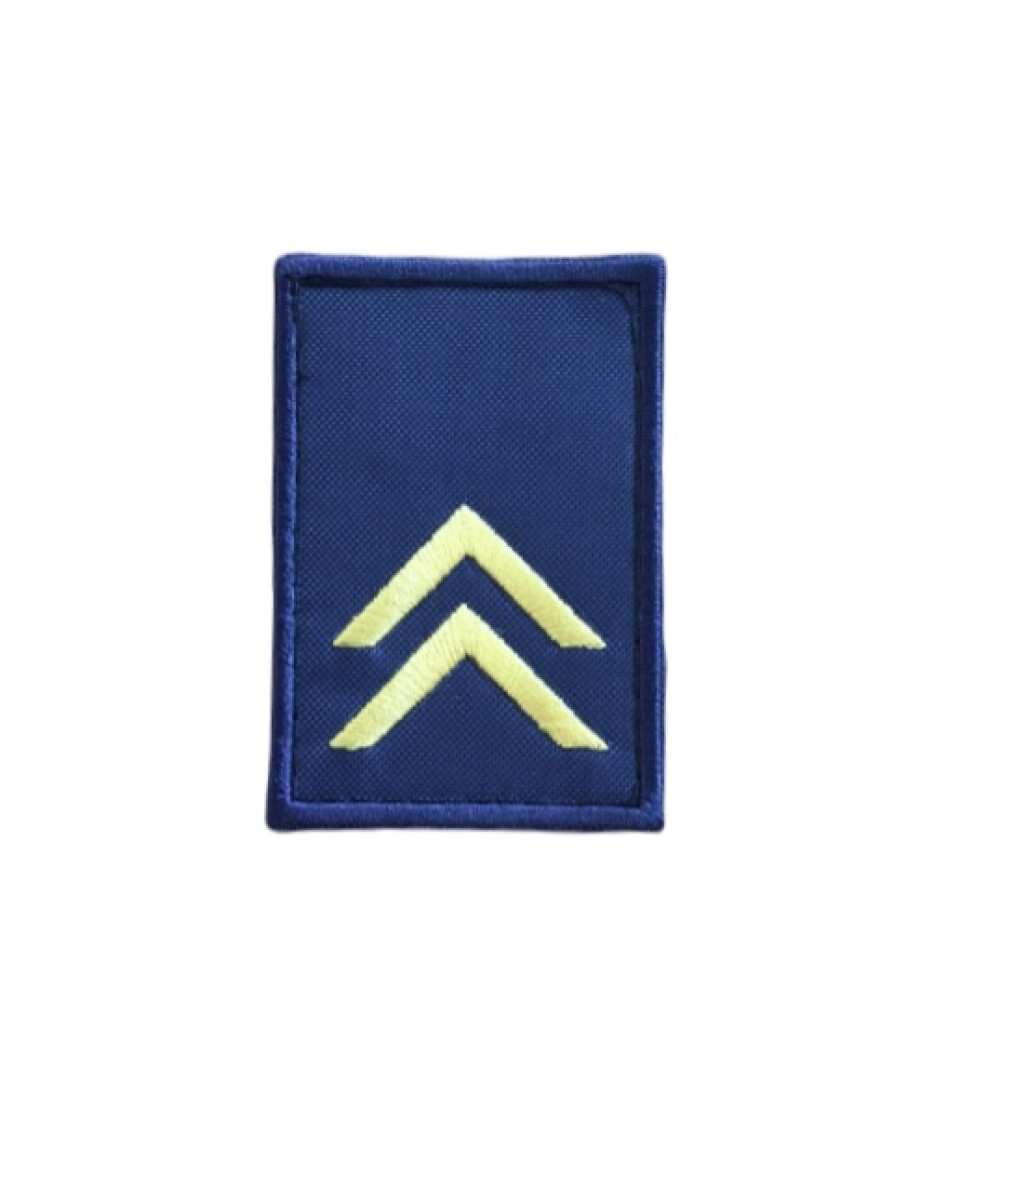 Grado de Bombero Uniforme Operacional - Sargento 